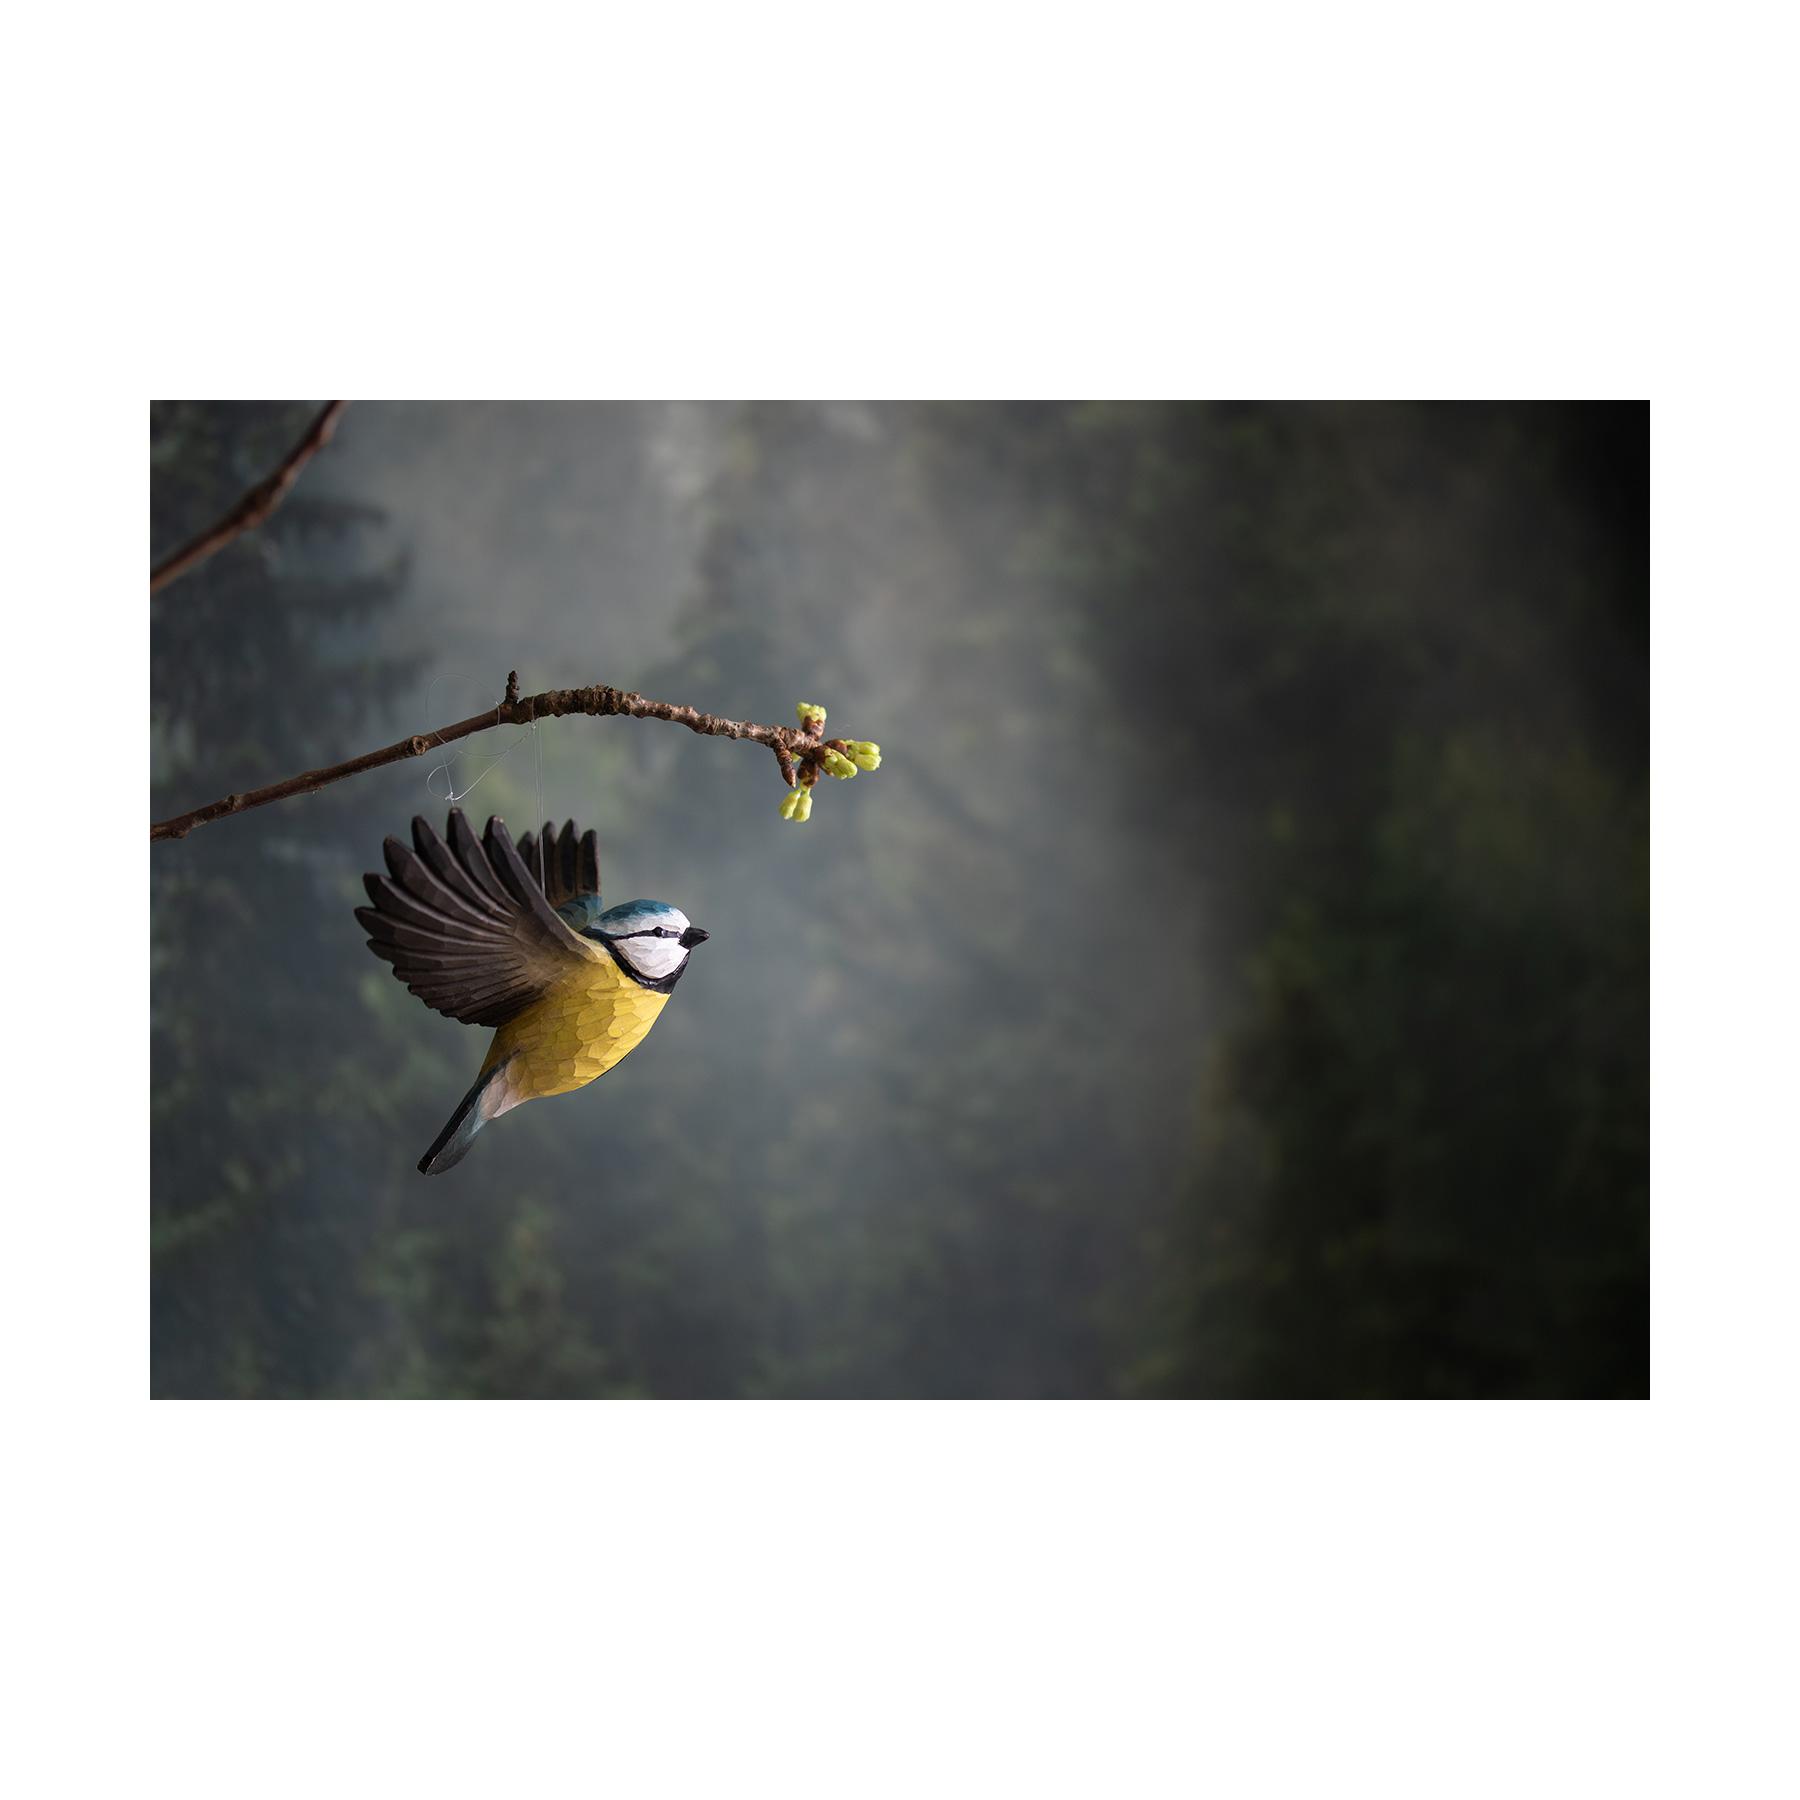 Wildlife Garden Decobird Flyvende blåmejse dekorationsfugl